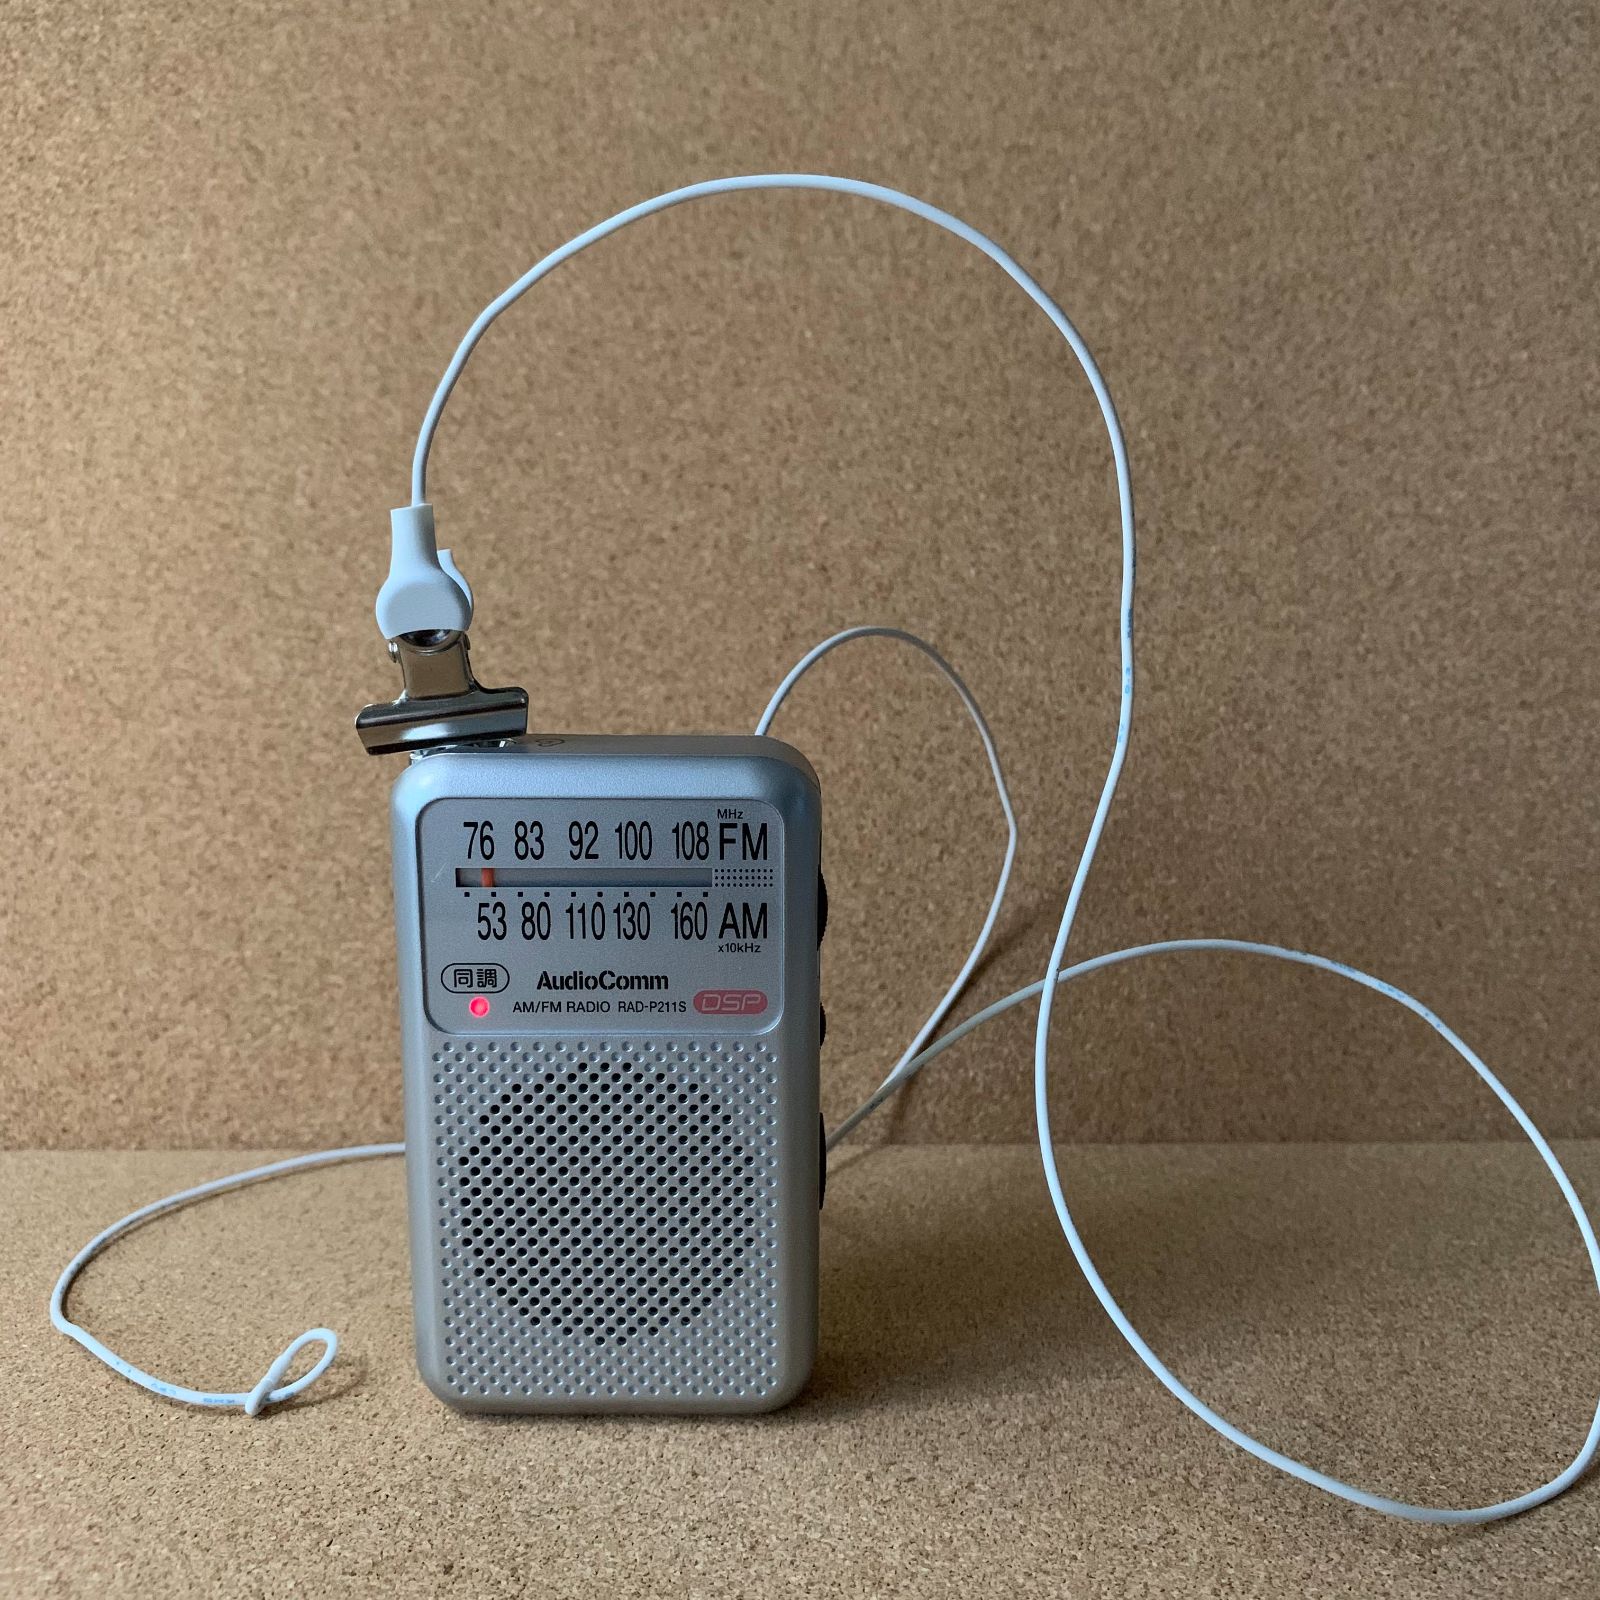 電波が弱いを改善するFMアンテナ短縮型1本・電線型2本セット - ラジオ